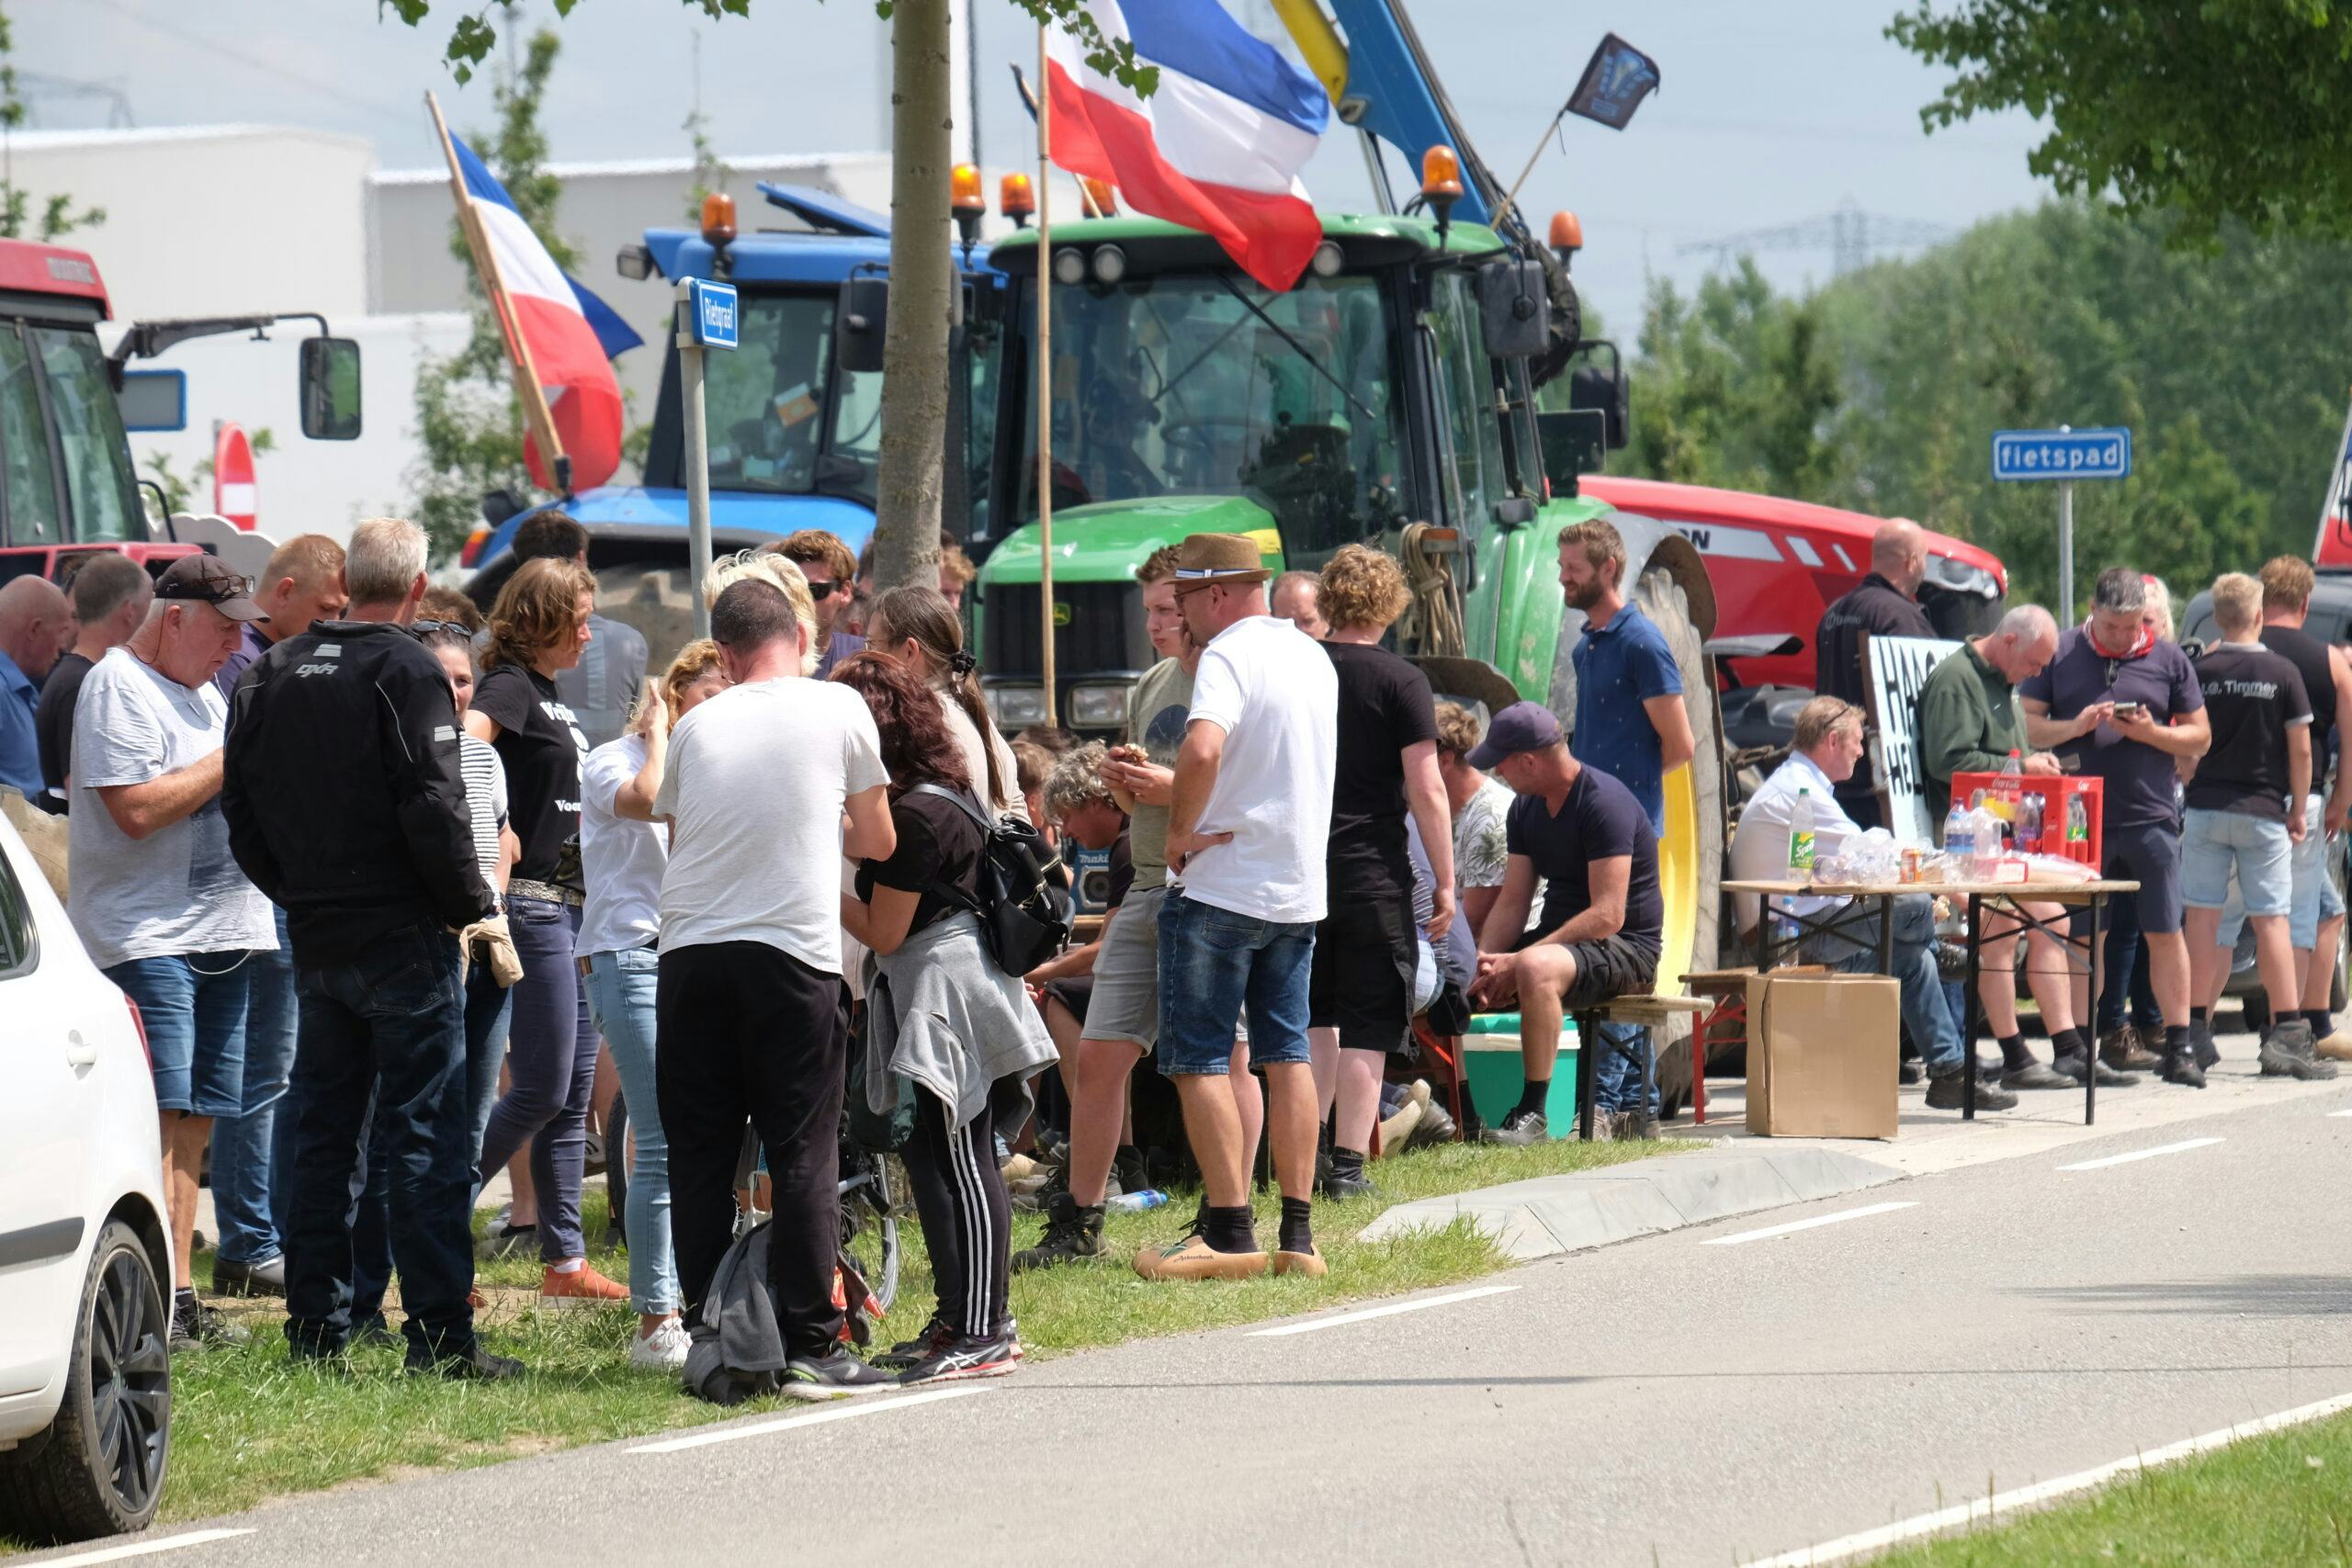 Boeren blokkeren Lidl dc Oosterhout